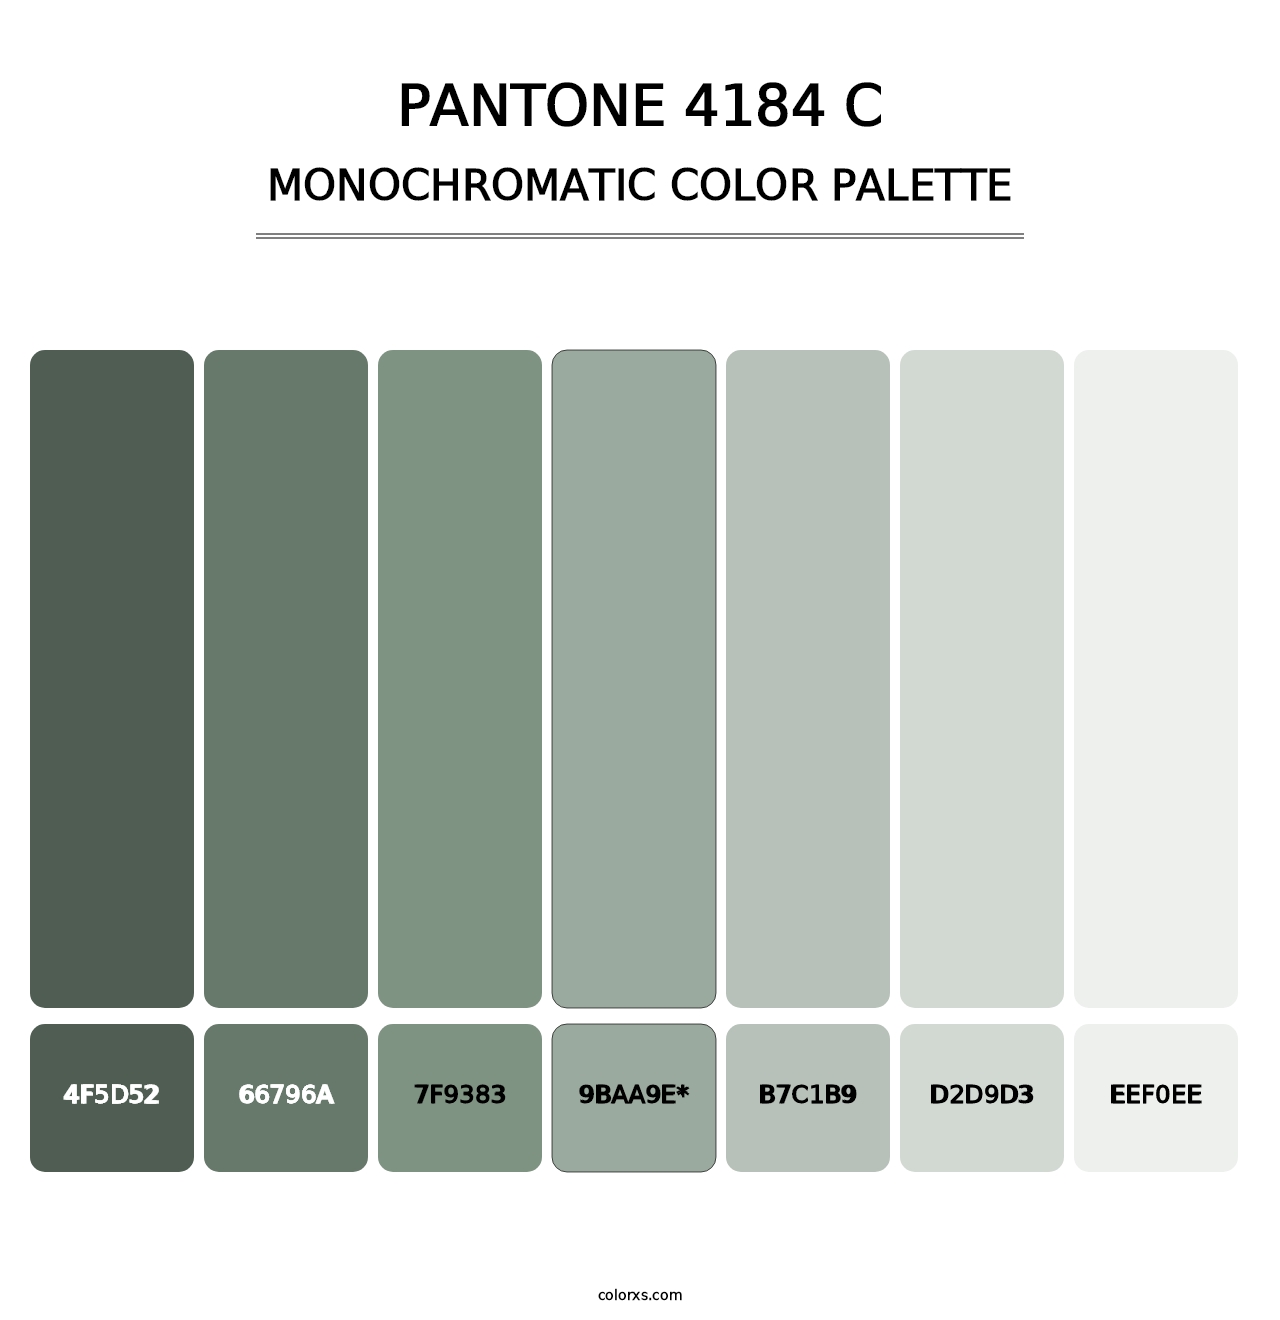 PANTONE 4184 C - Monochromatic Color Palette